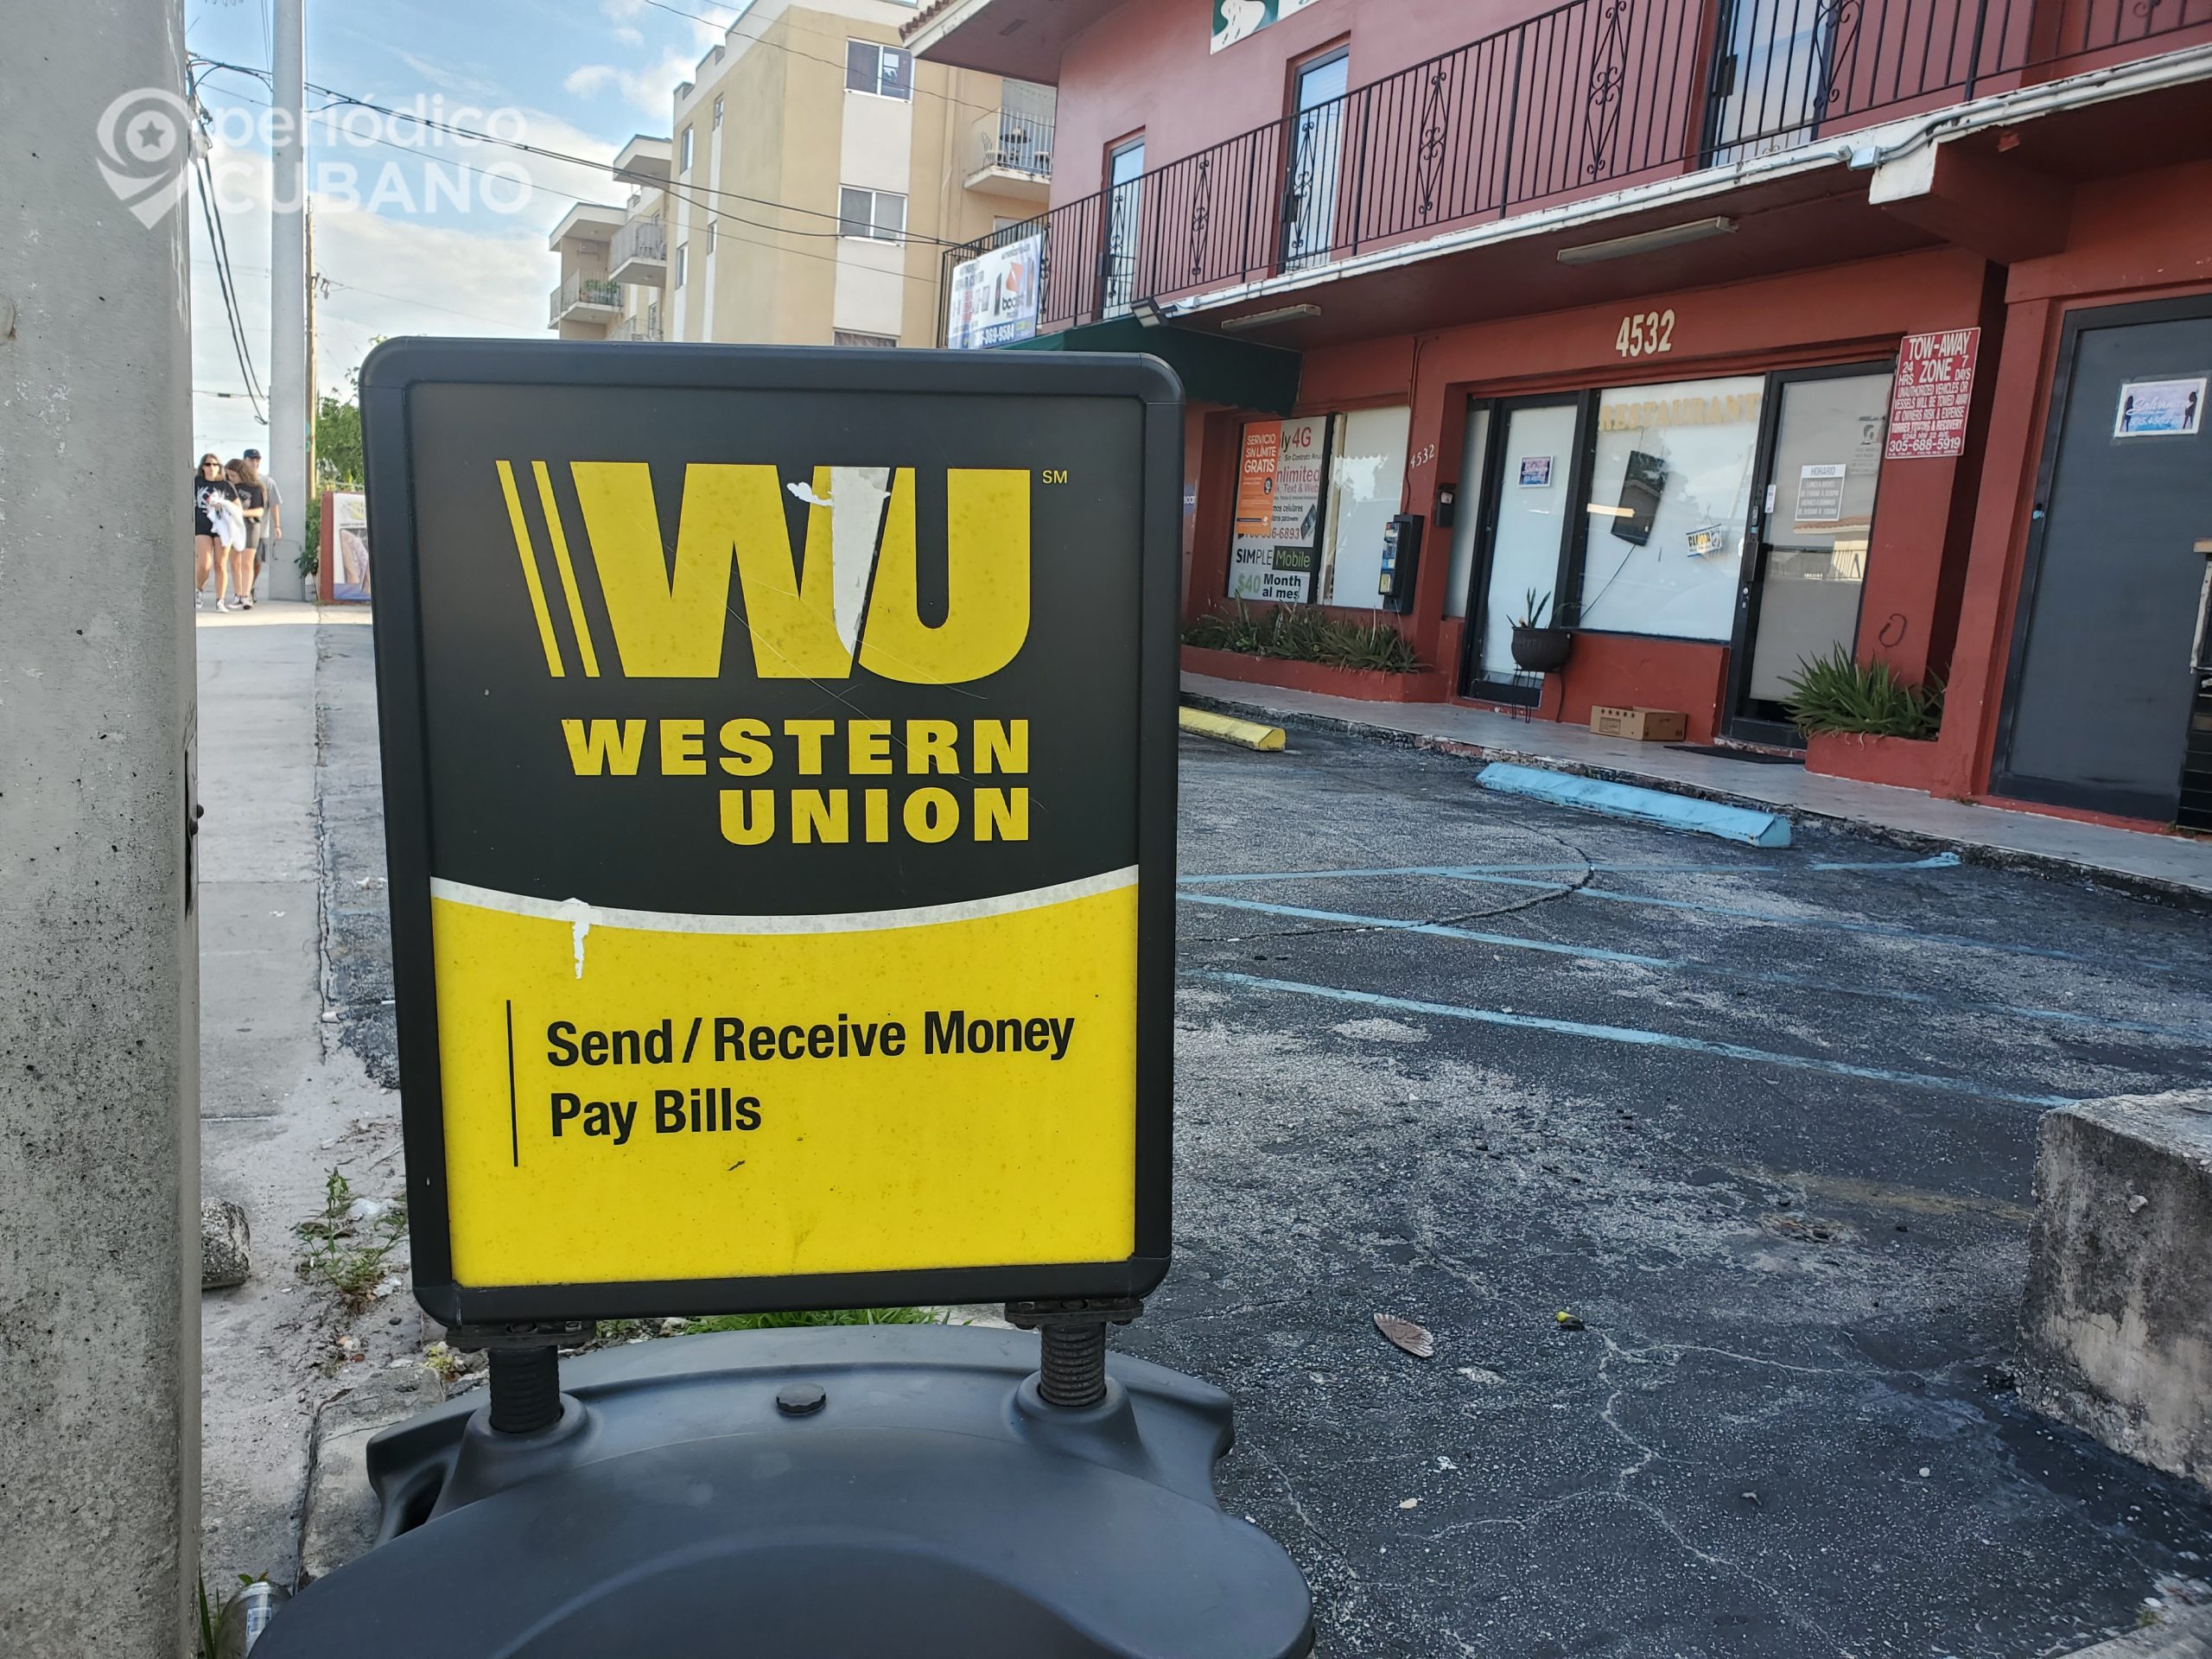 Requisitos para mandar remesas a Cuba por Western Union desde EEUU